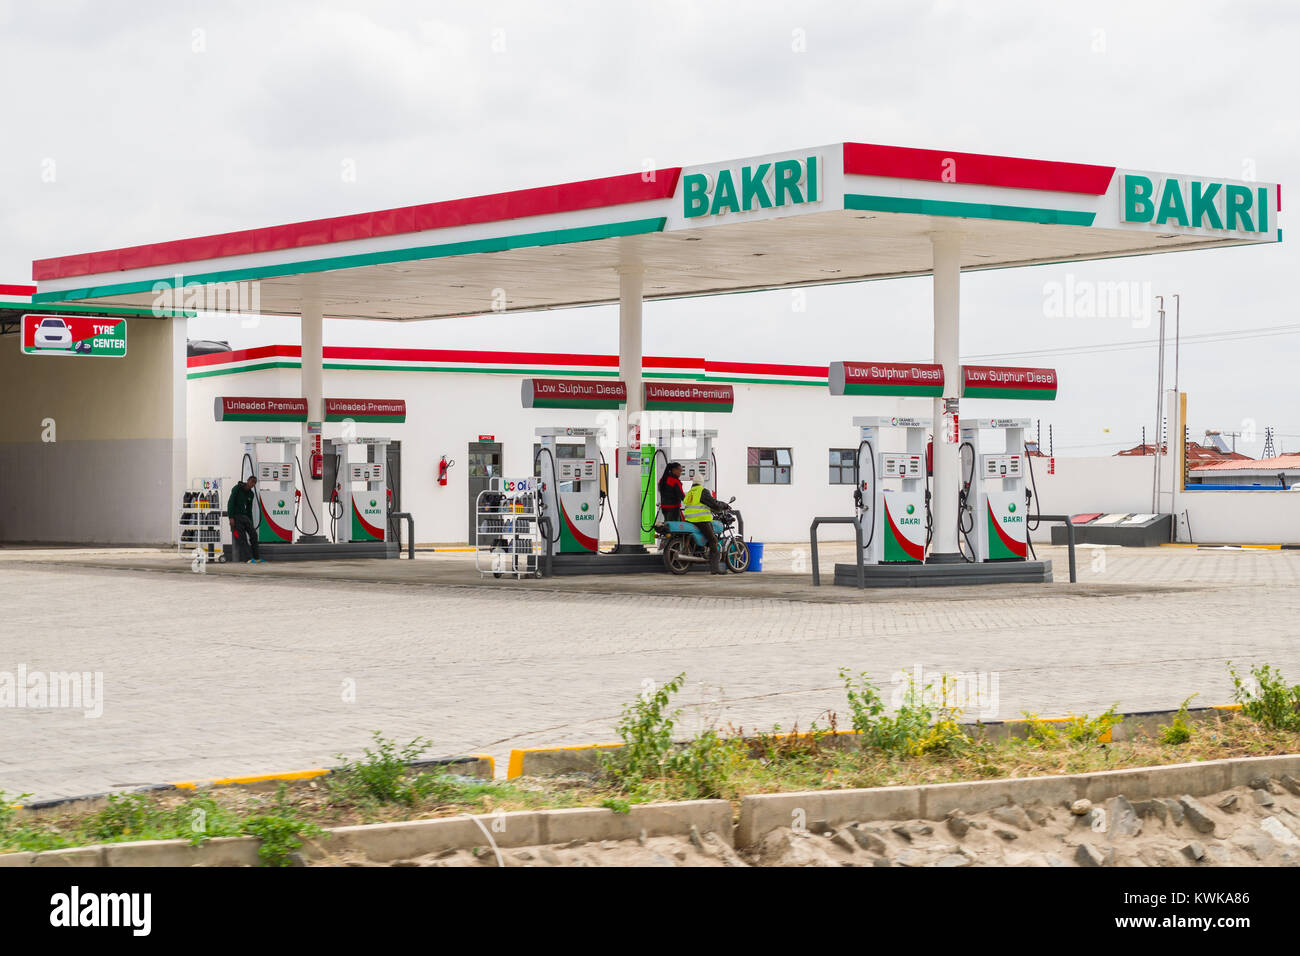 Bakri parvis de la gare de carburant avec le client et l'accompagnateur à l'une des pompes à essence, Kitengela, Kenya, Afrique de l'Est Banque D'Images